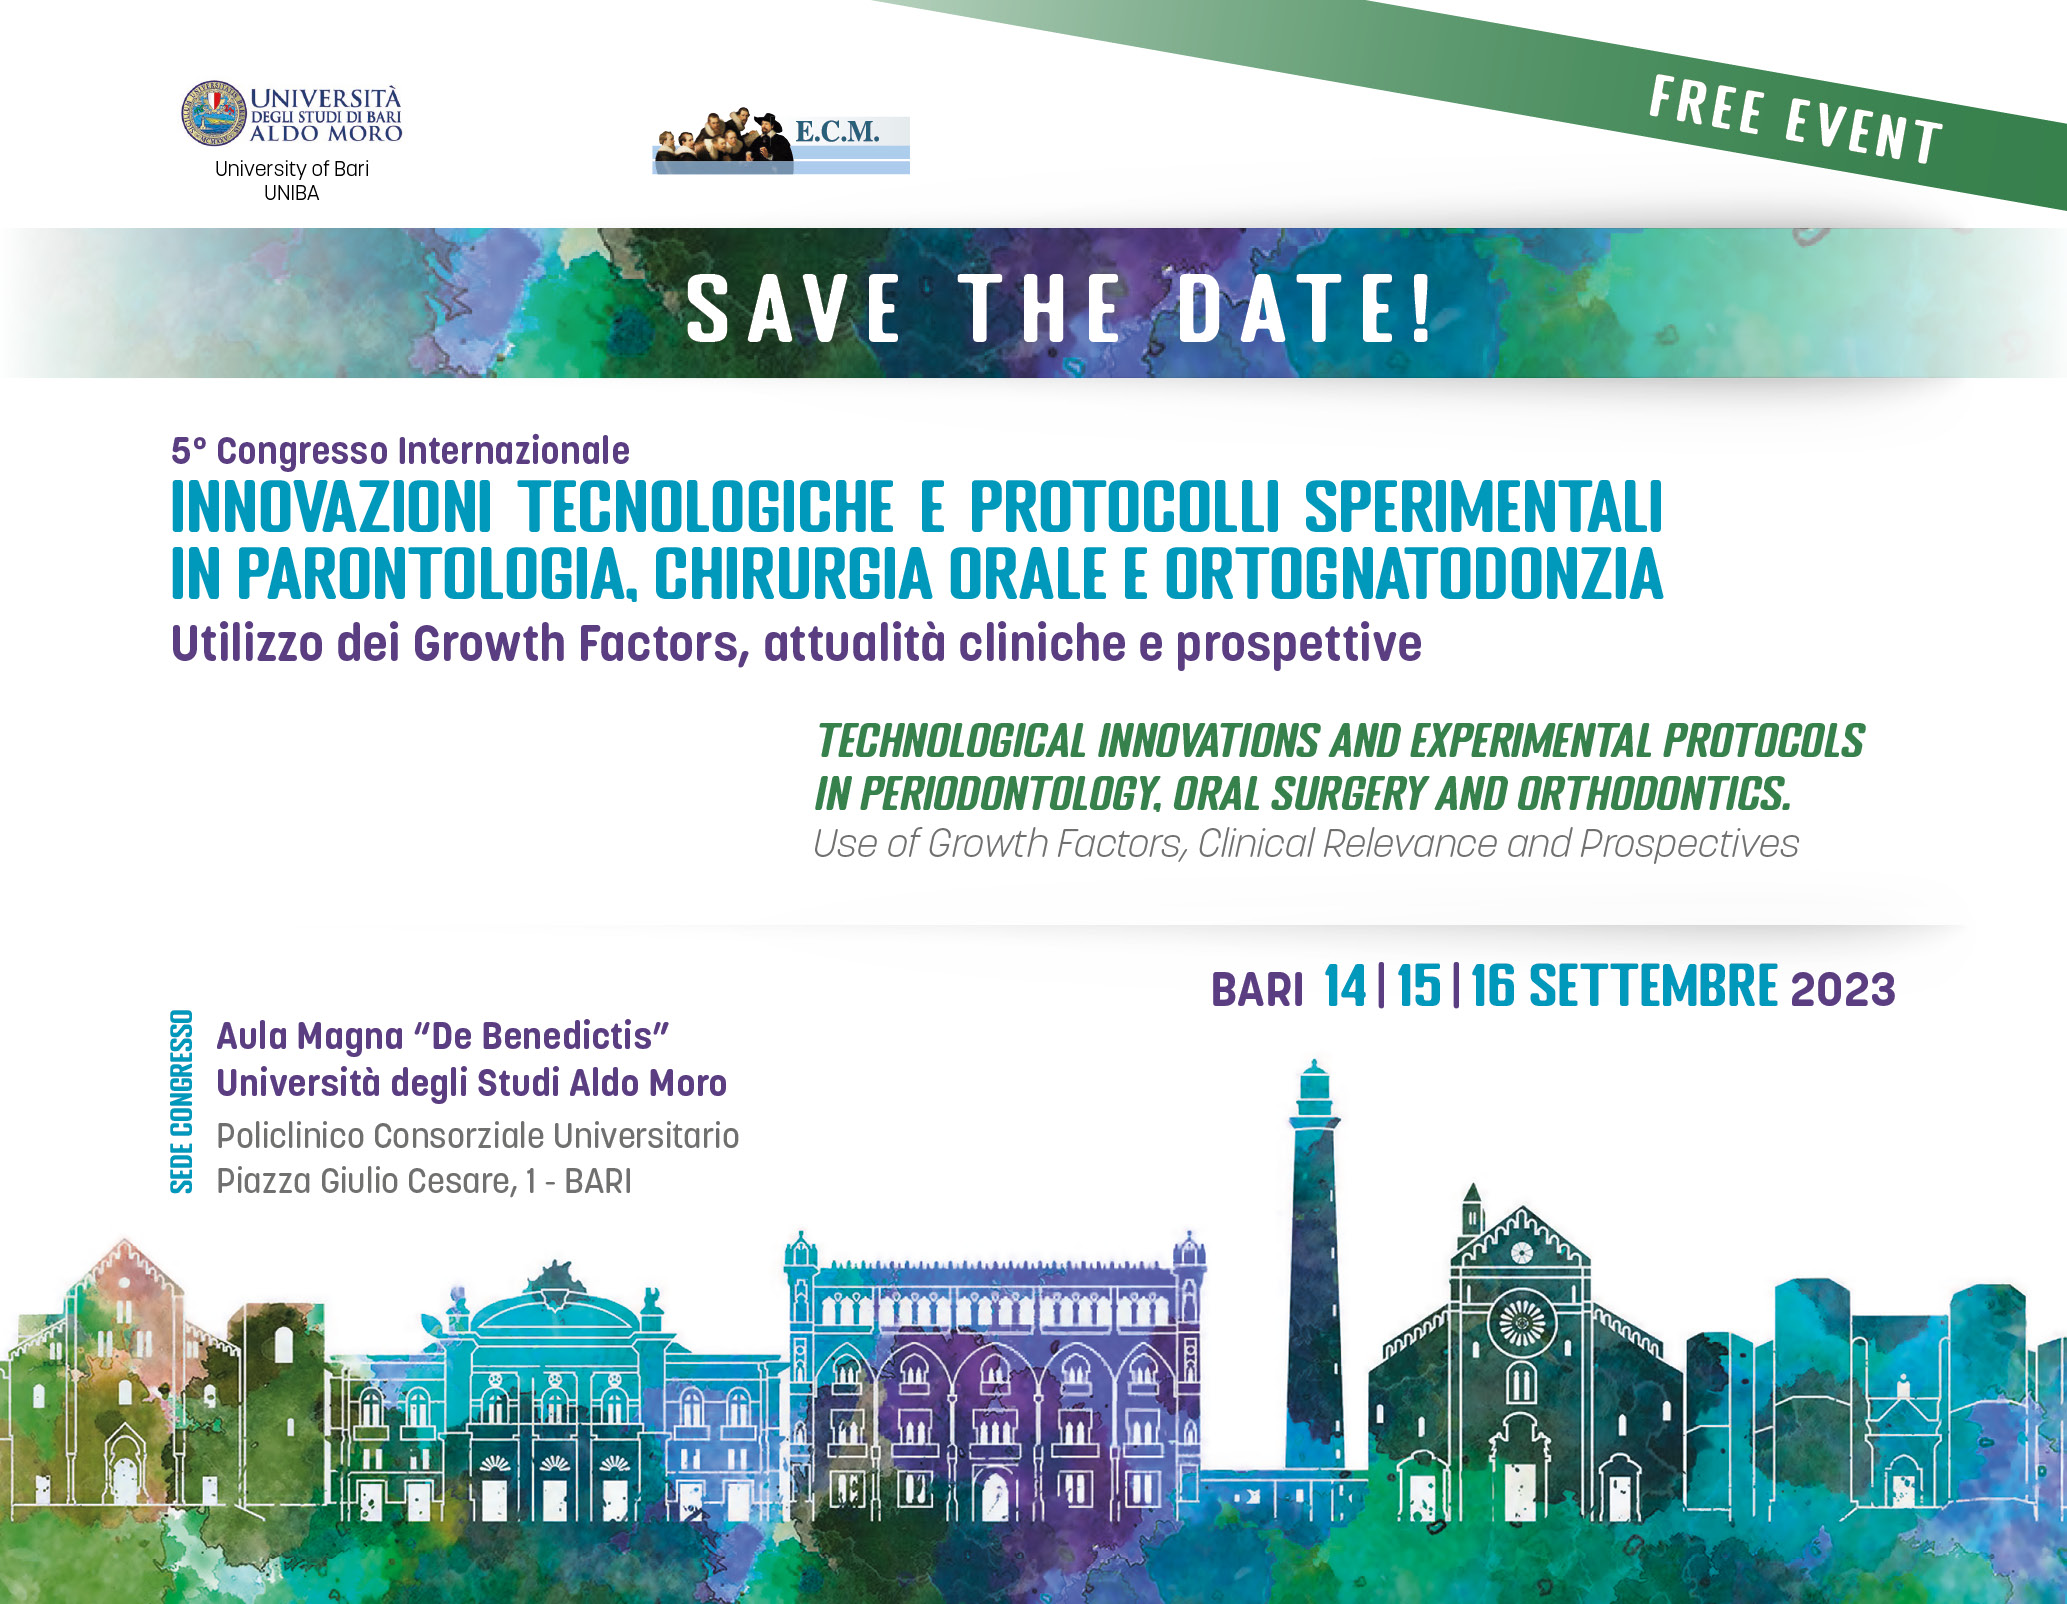 5° Congresso Internazionale Università degli Studi di Bari, 14-15-16 Settembre 2023